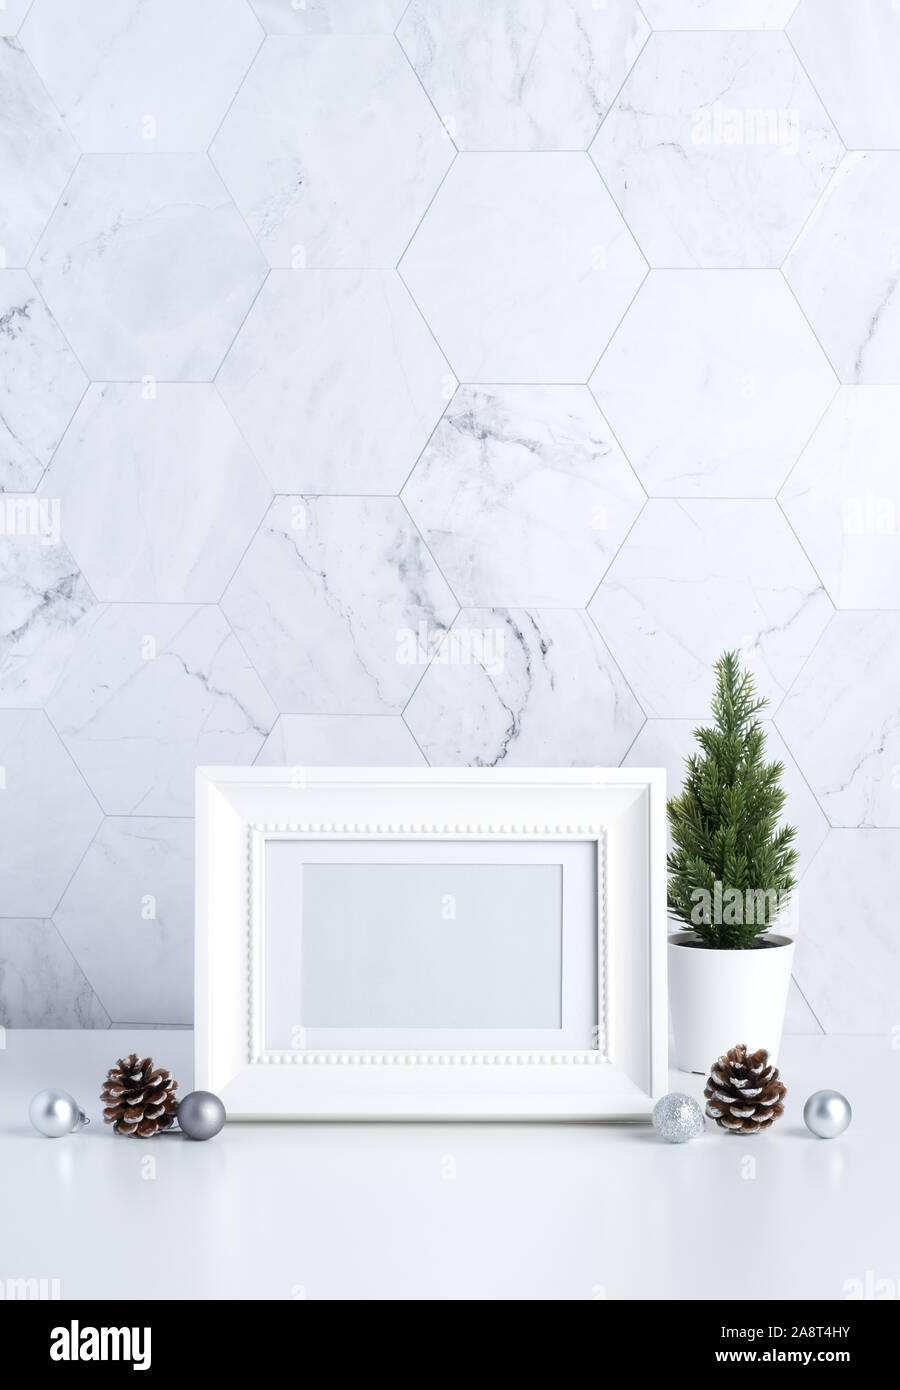 White vintage Bilderrahmen mit Weihnachtsbaum, Pine Cone und Dekor xmas  Ball auf weißen Tisch und Marmor Fliesen Wand Hintergrund. Reinigen Sie  minimalen einfachen Stil Stockfotografie - Alamy